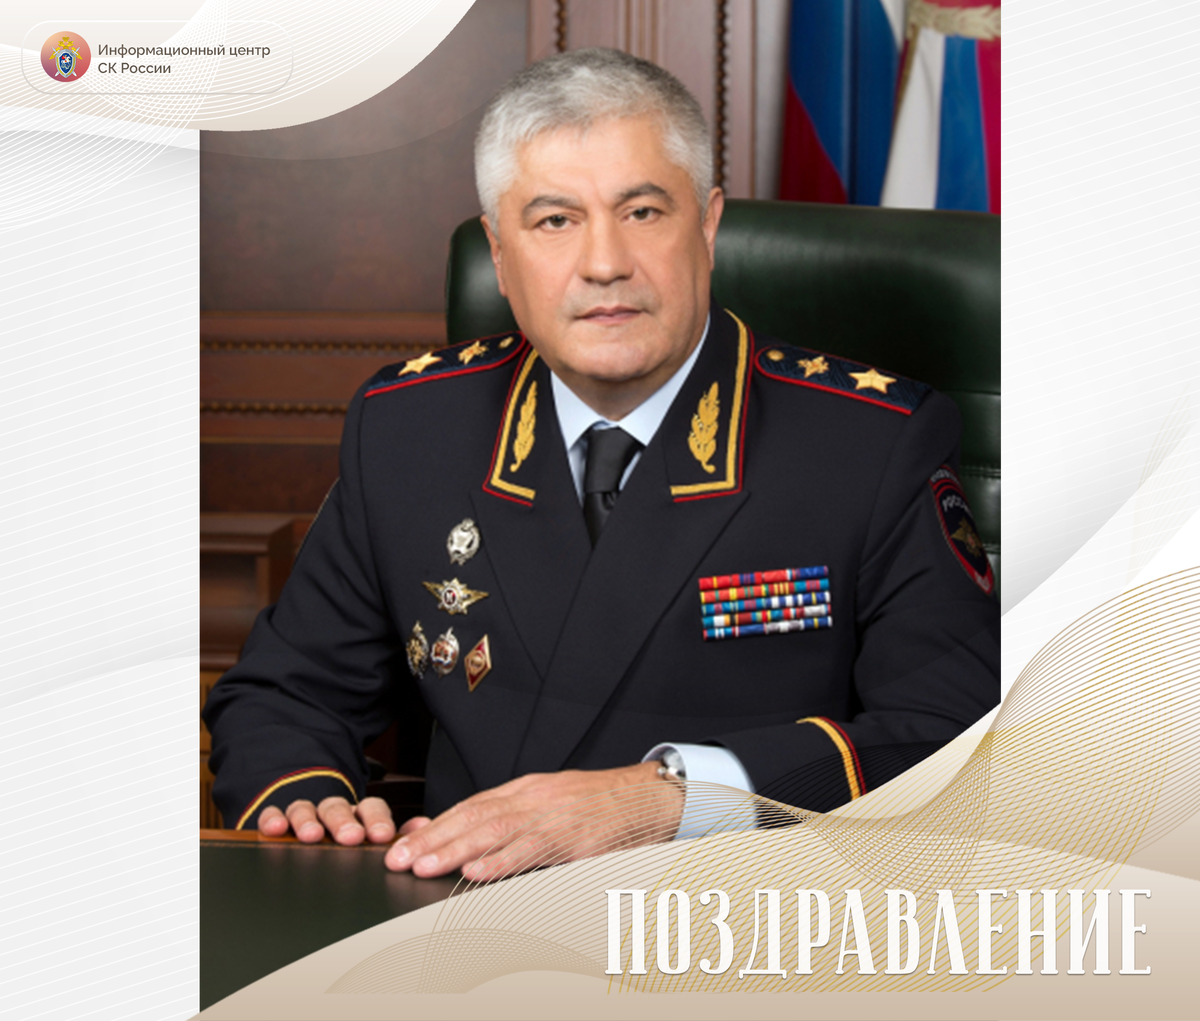 Сегодня свой день рождения отмечает исполняющий обязанности Министра внутренних дел Российской Федерации генерал полиции Российской Федерации Владимир Александрович Колокольцев.